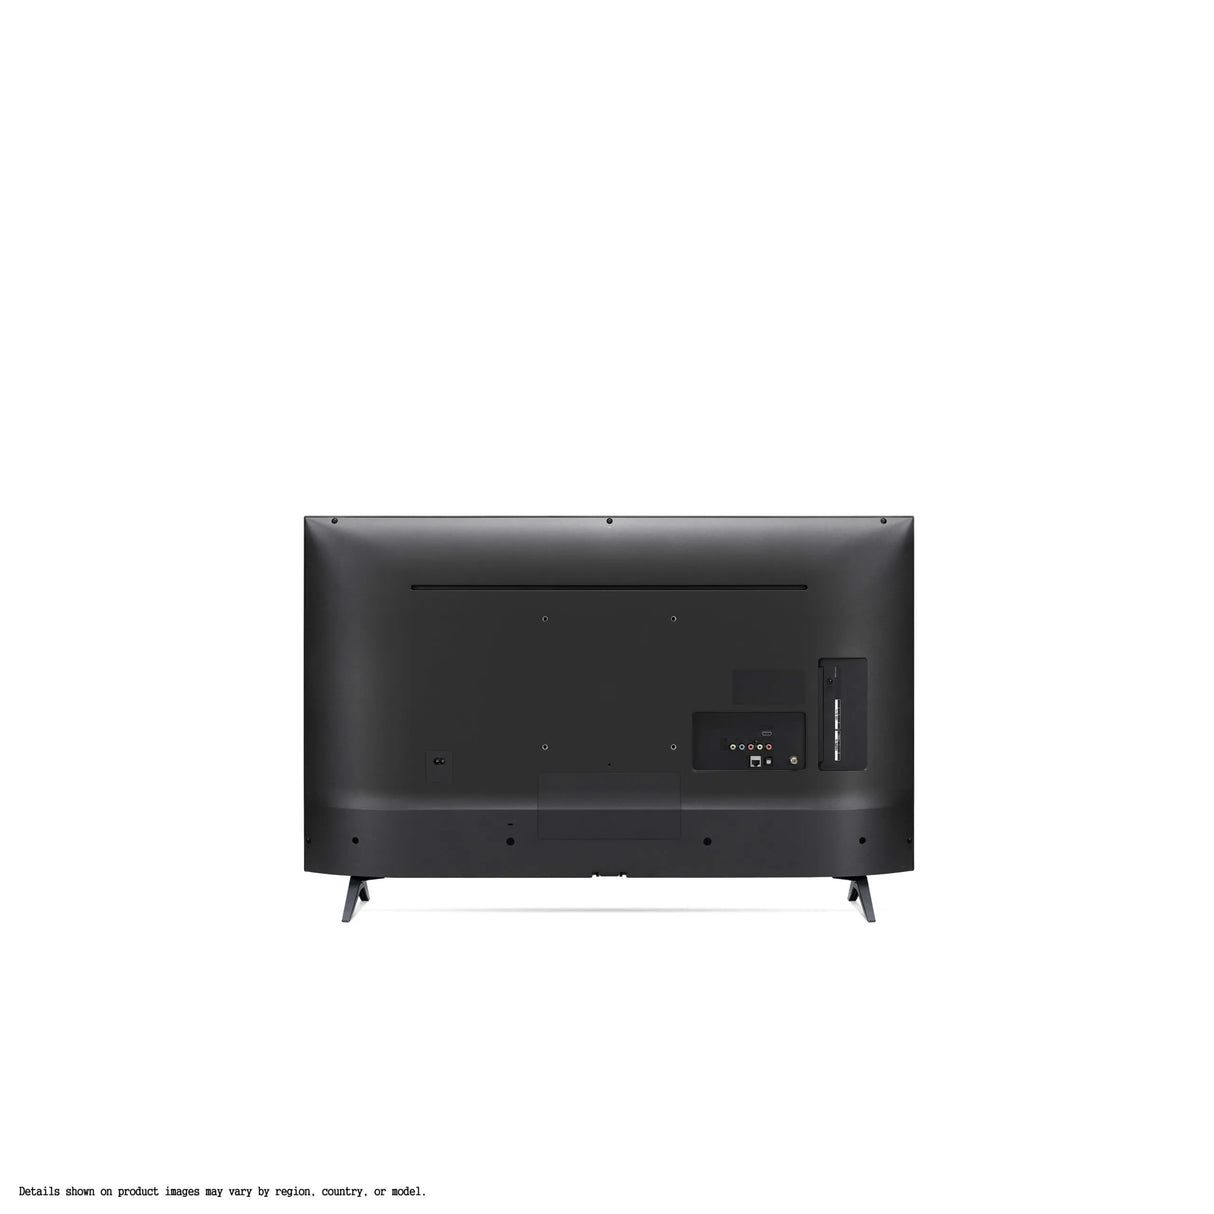 Televisor LED Smart TV 43" Full HD